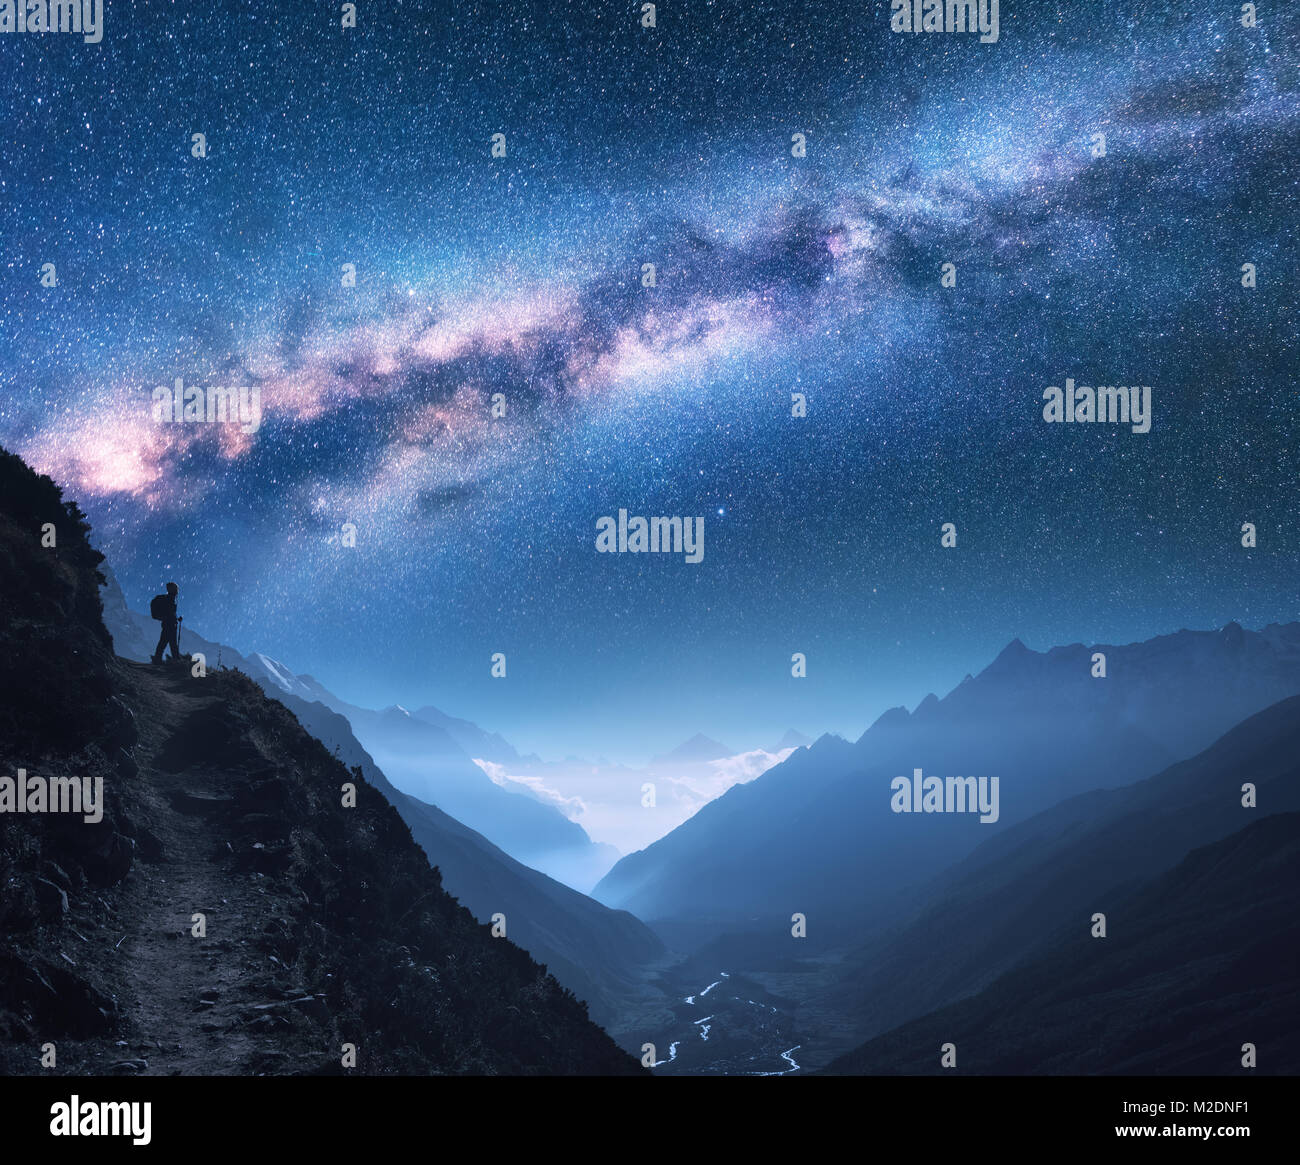 Spazio con Via Lattea, ragazza e le montagne. Silhouette di donna in piedi sul picco di montagna, le montagne e il cielo stellato di notte in Nepal. Sky con stella Foto Stock